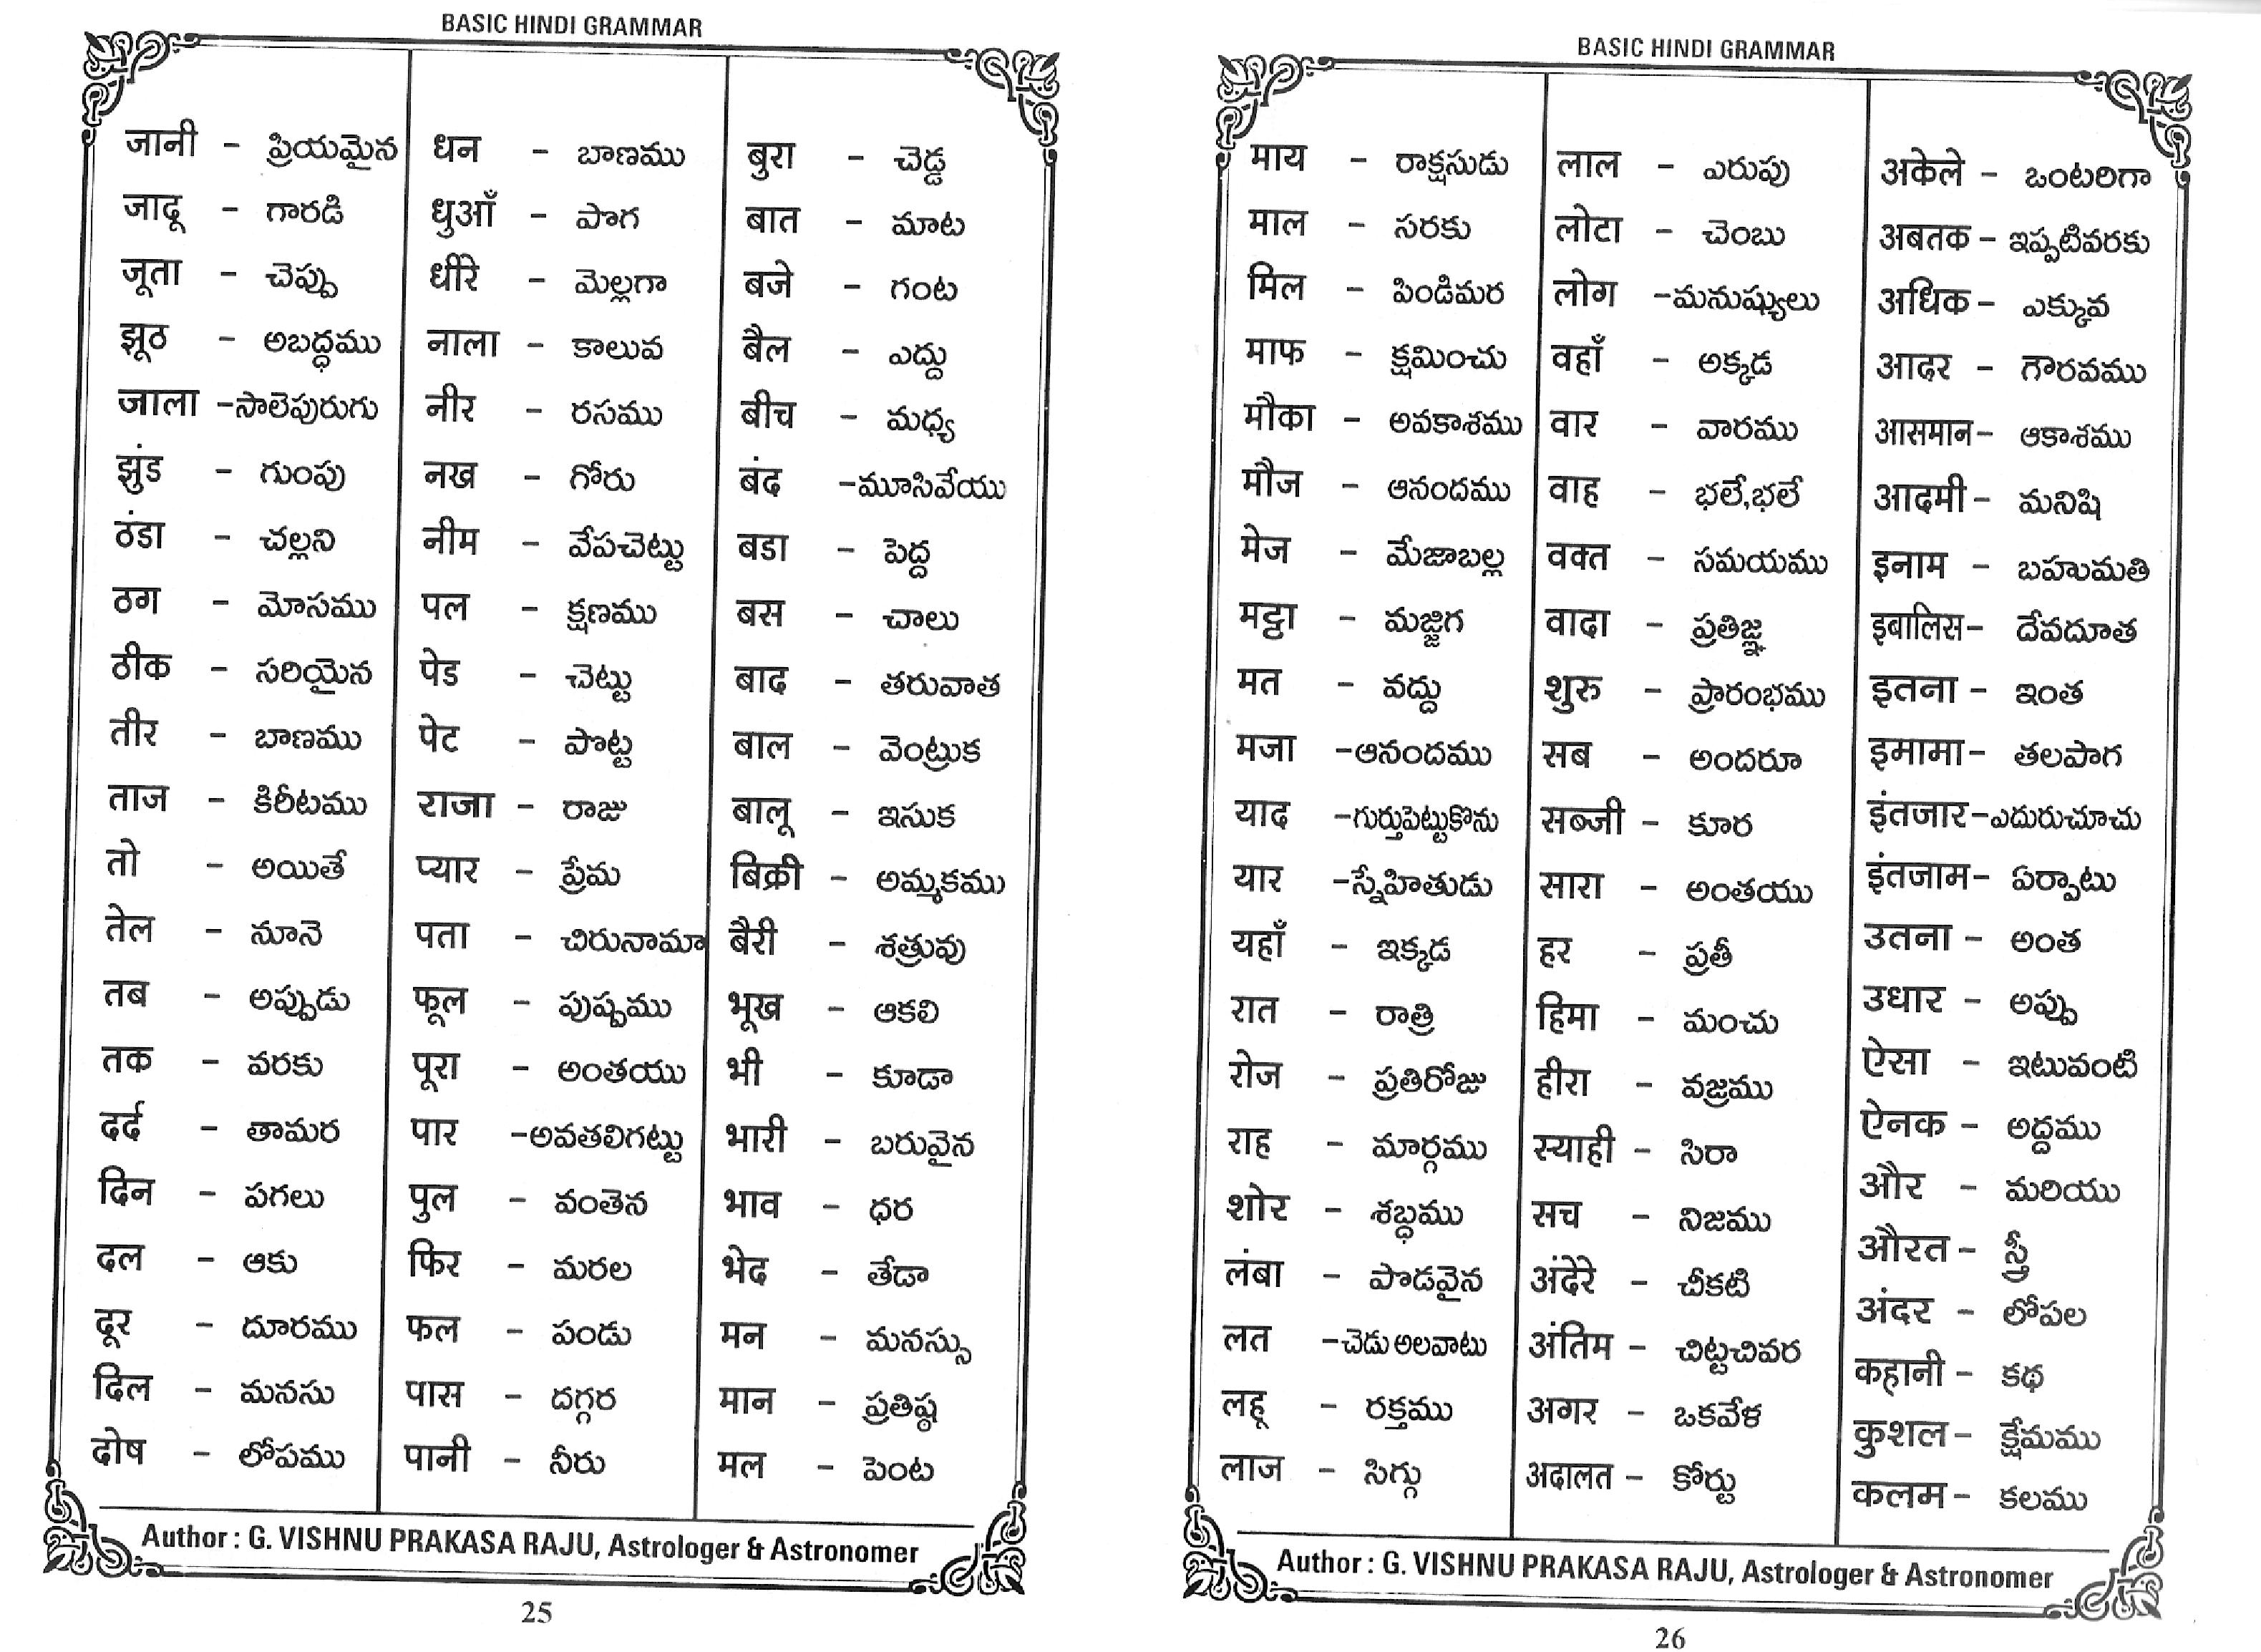 spoken sanskrit lessons pdf